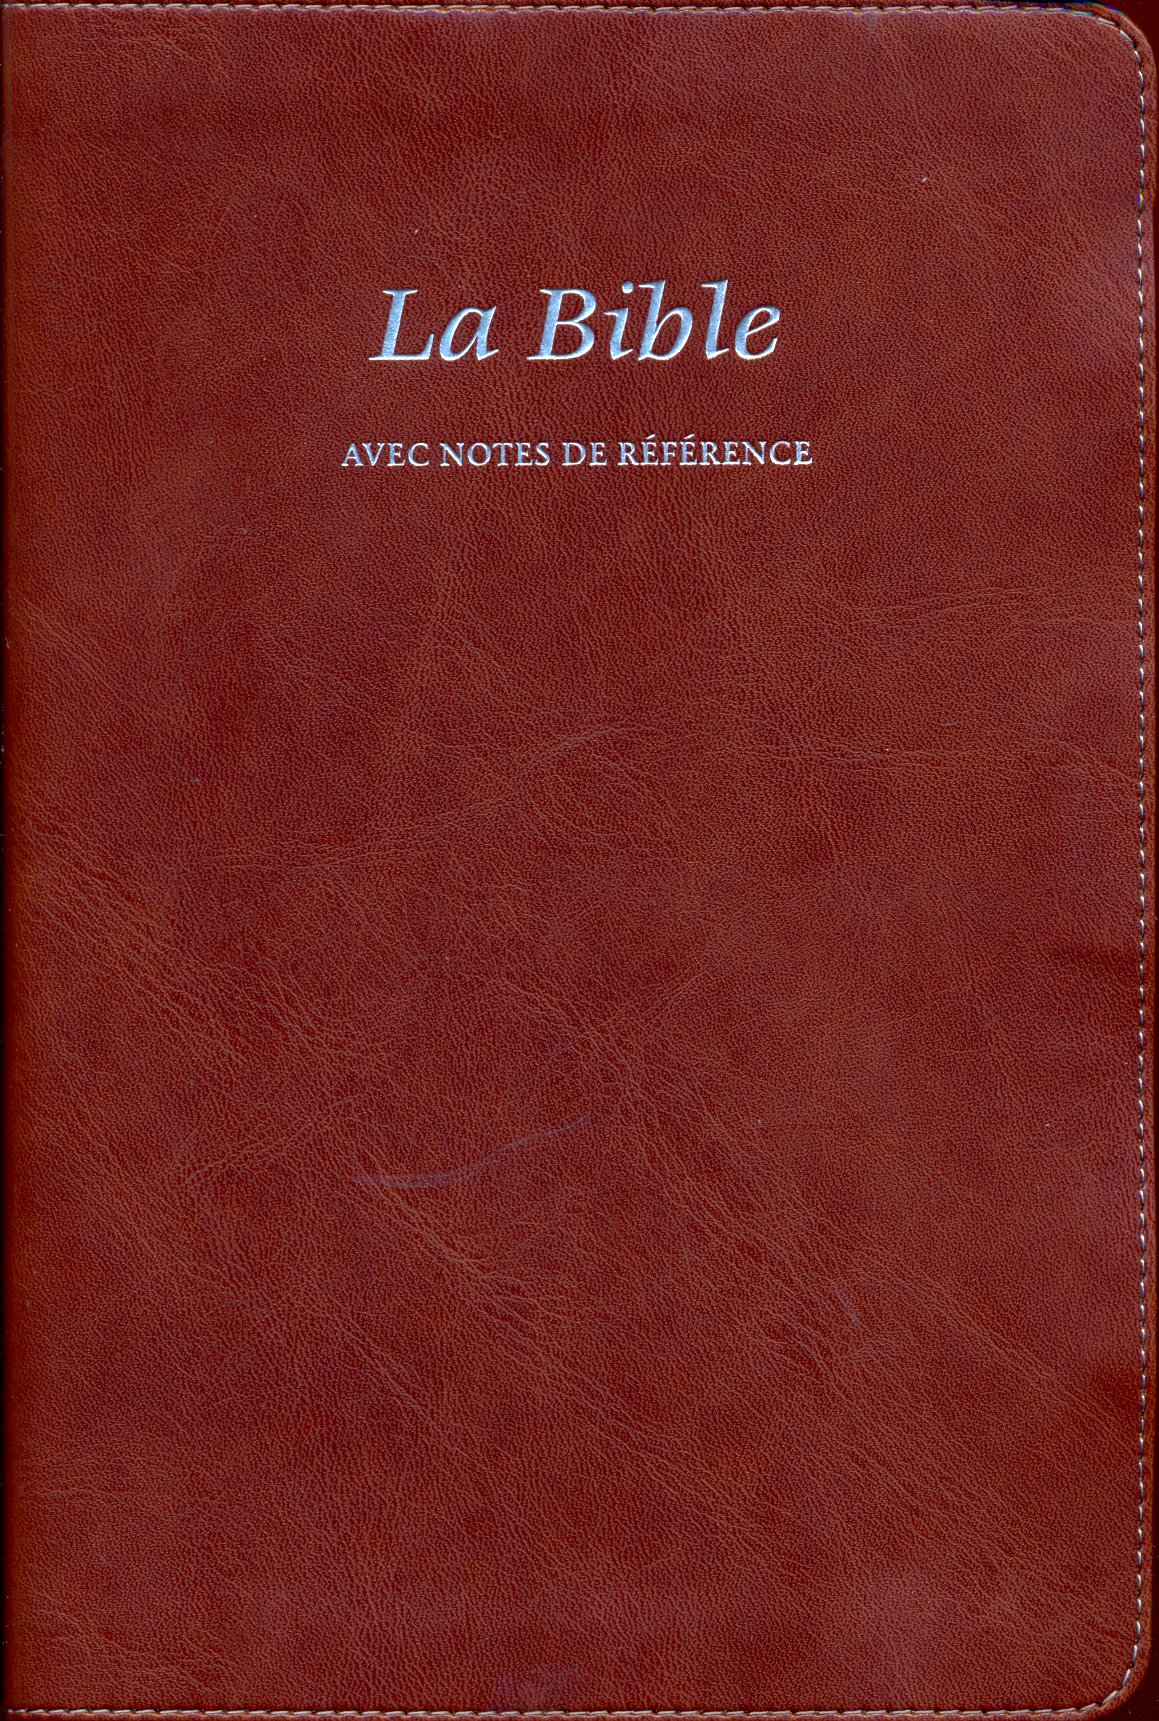 Bible avec notes de référence, Segond 21, brune - couverture souple, vivella